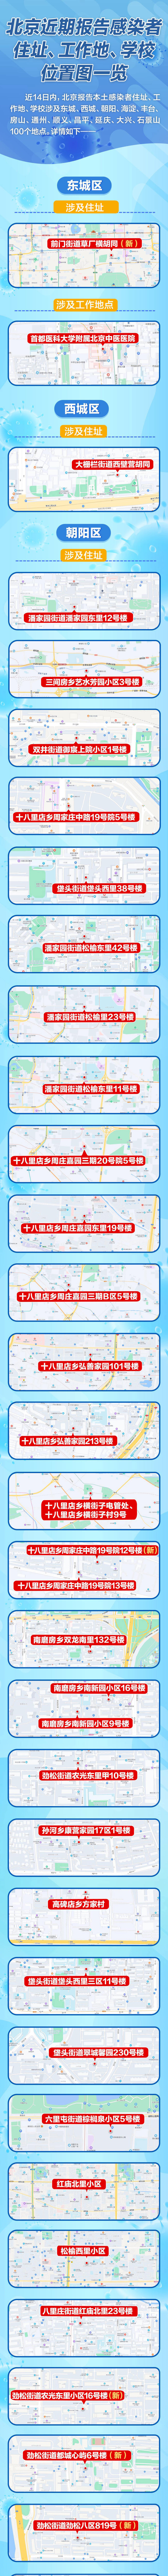 北京近期报告199例感染者 关系图、风险点一览